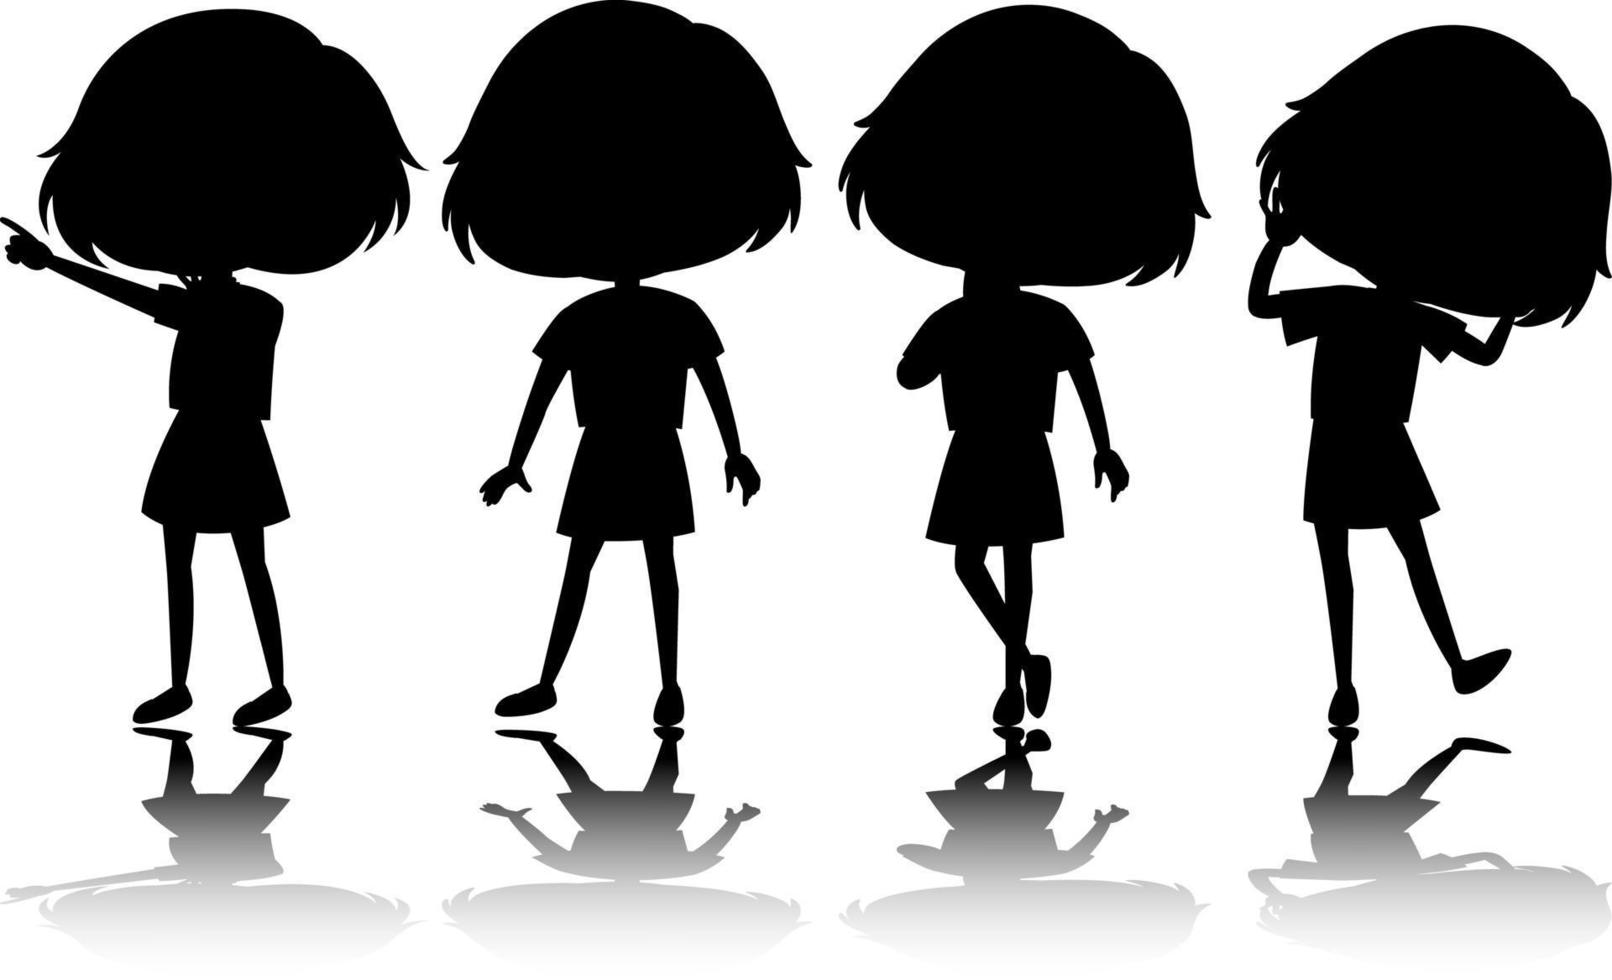 set di silhouette di bambini con riflesso vettore